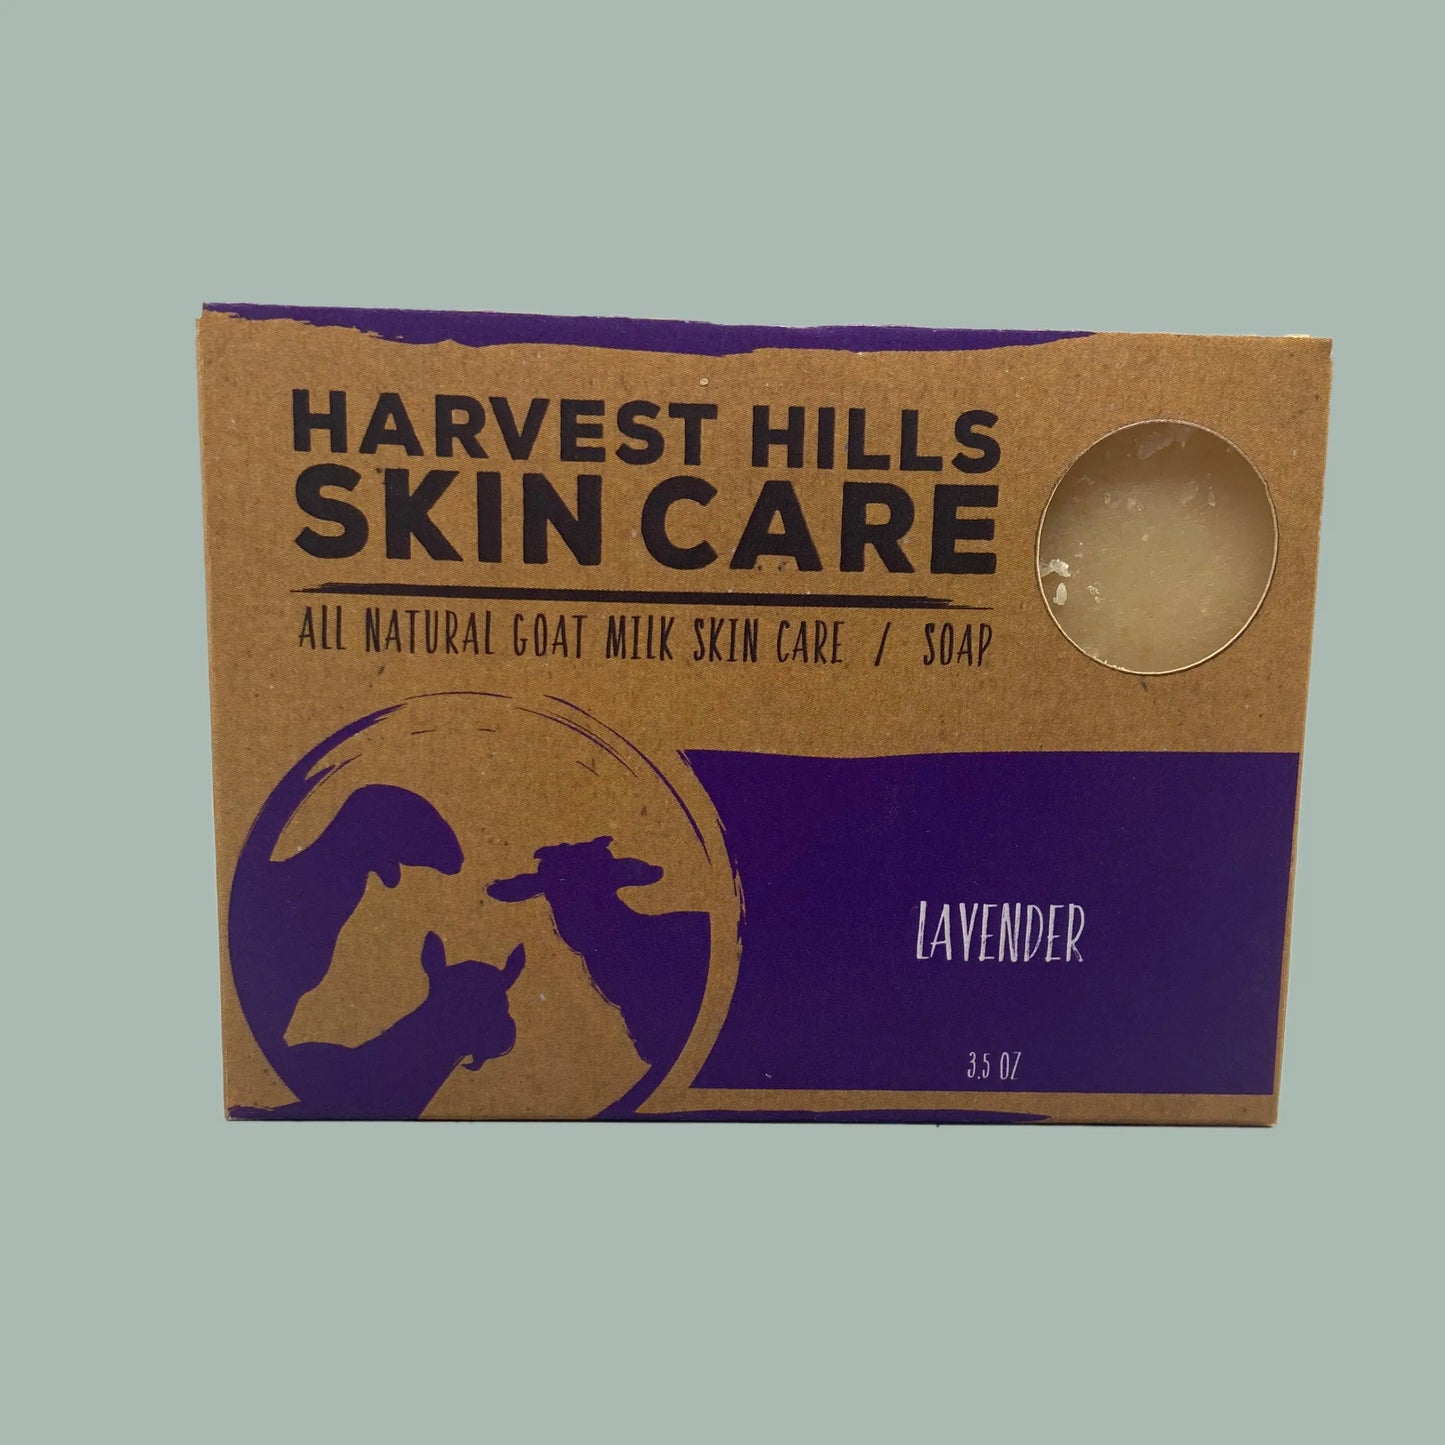 Lavender Goat Milk Soap Harvest Hills Skin Care All Natural Goat Milk Skin Care